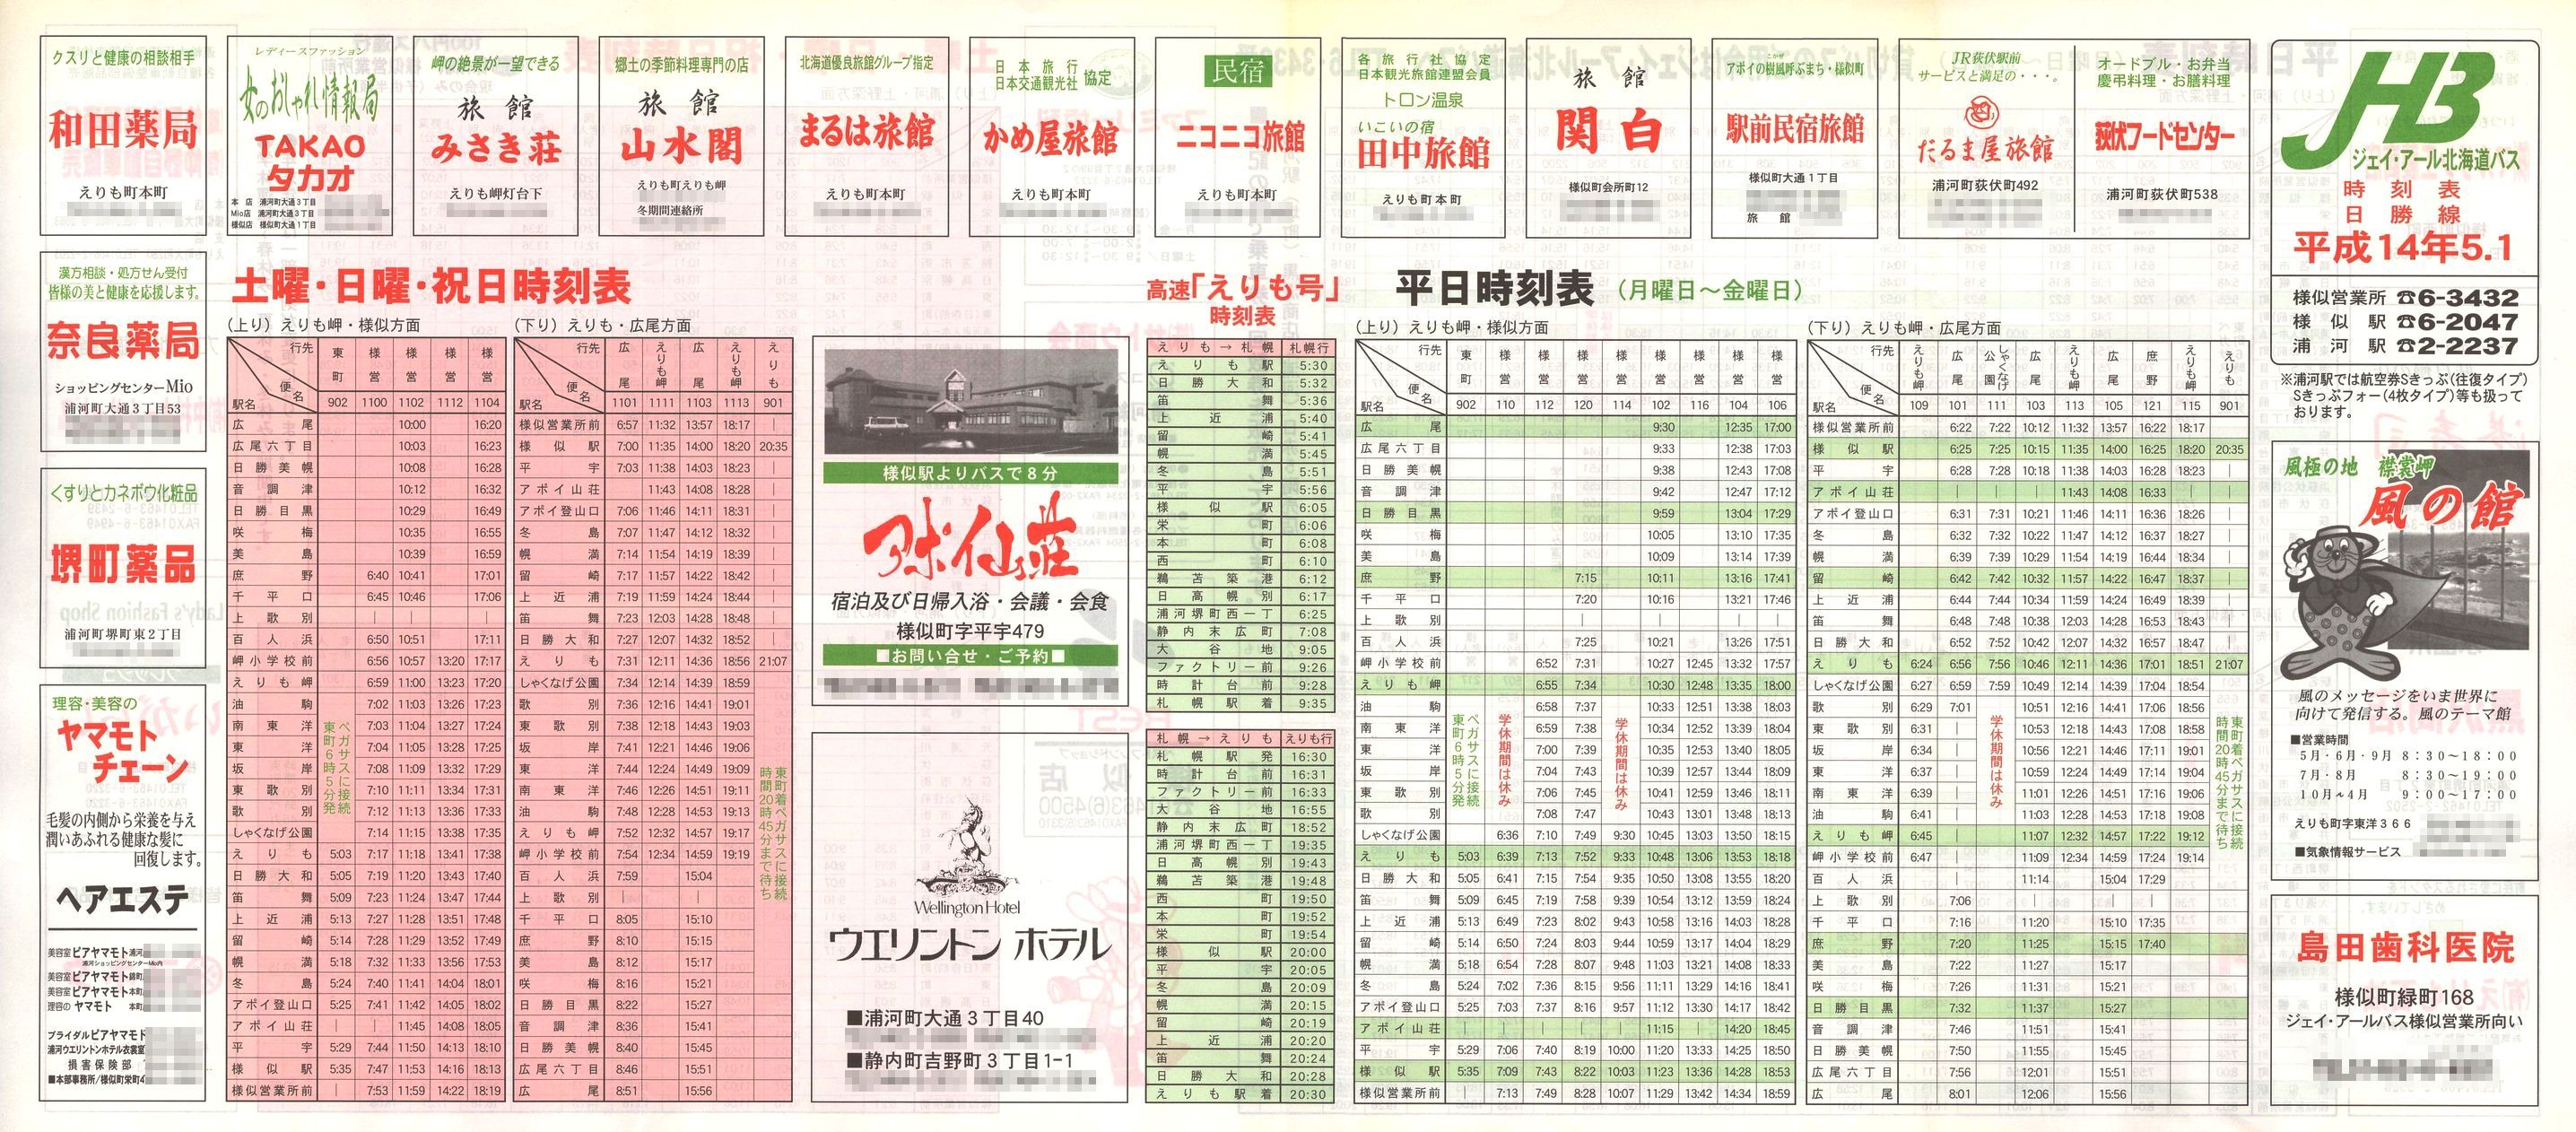 2002-05-01改正_ジェイ・アール北海道バス_日勝線時刻表表面